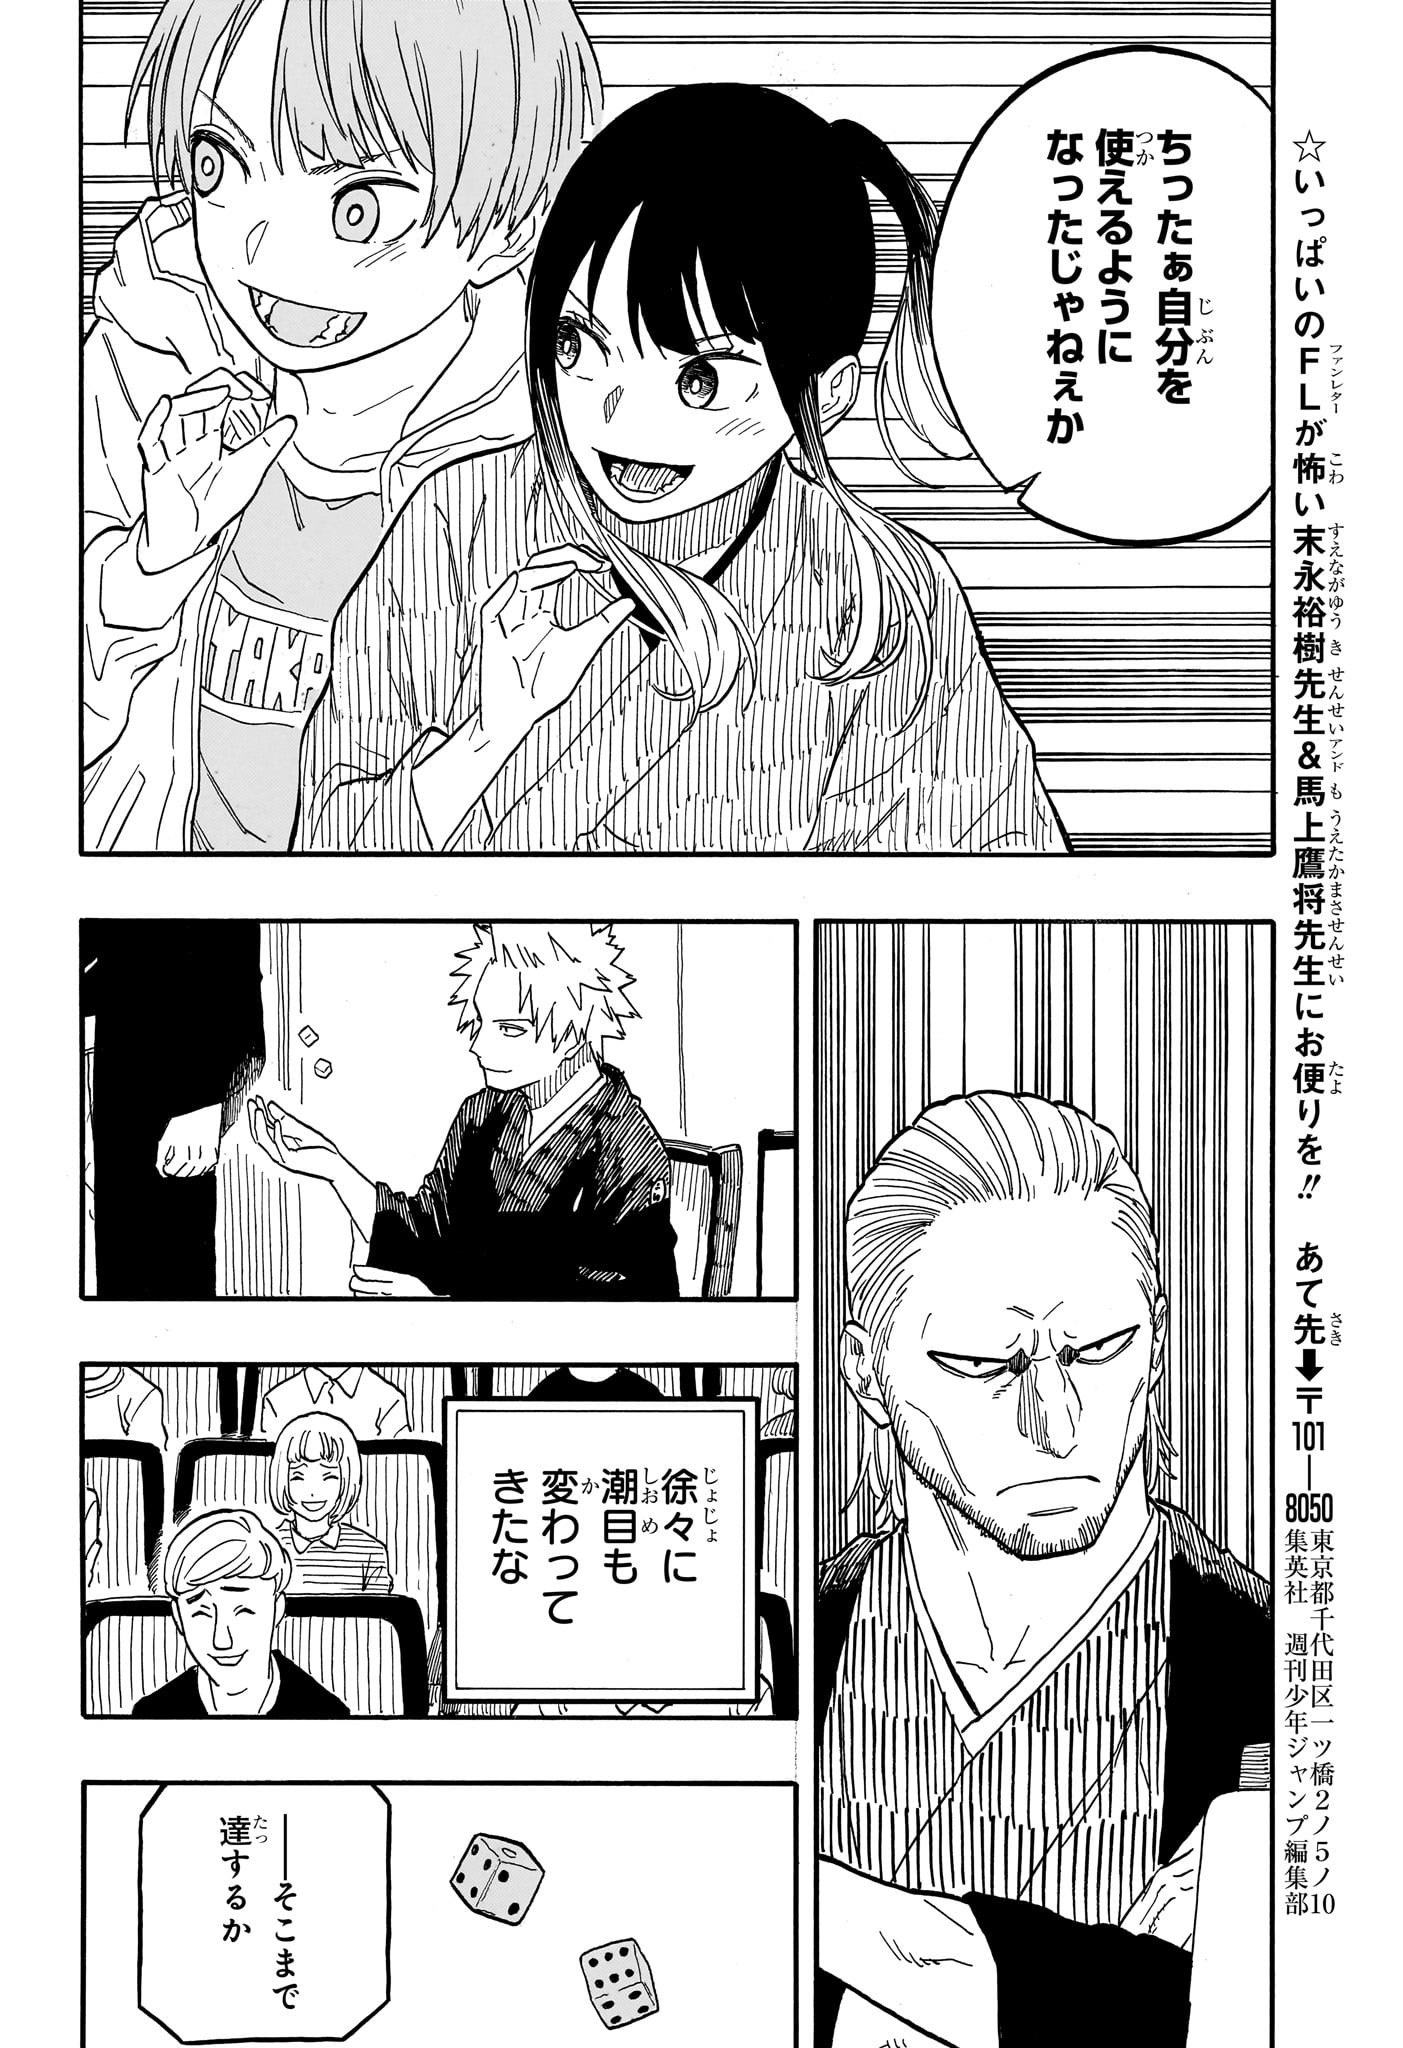 Akane-Banashi - Chapter 98 - Page 20